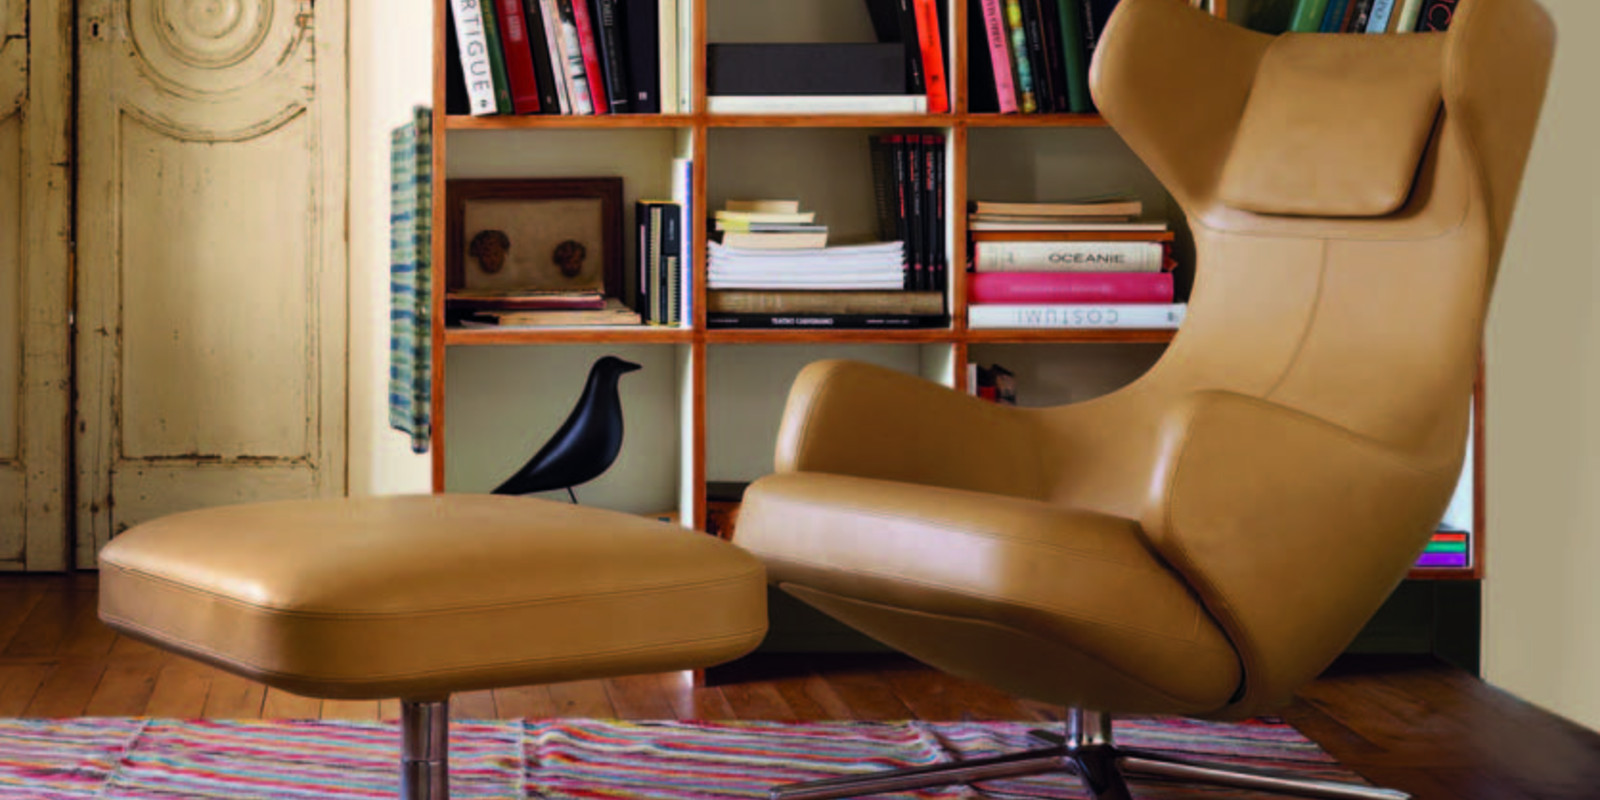 WeihnachtsNeujahrsaktion 2012/2013: Vitra Sessel Repos und Klassiker Eames Lounge Chair Bild 1